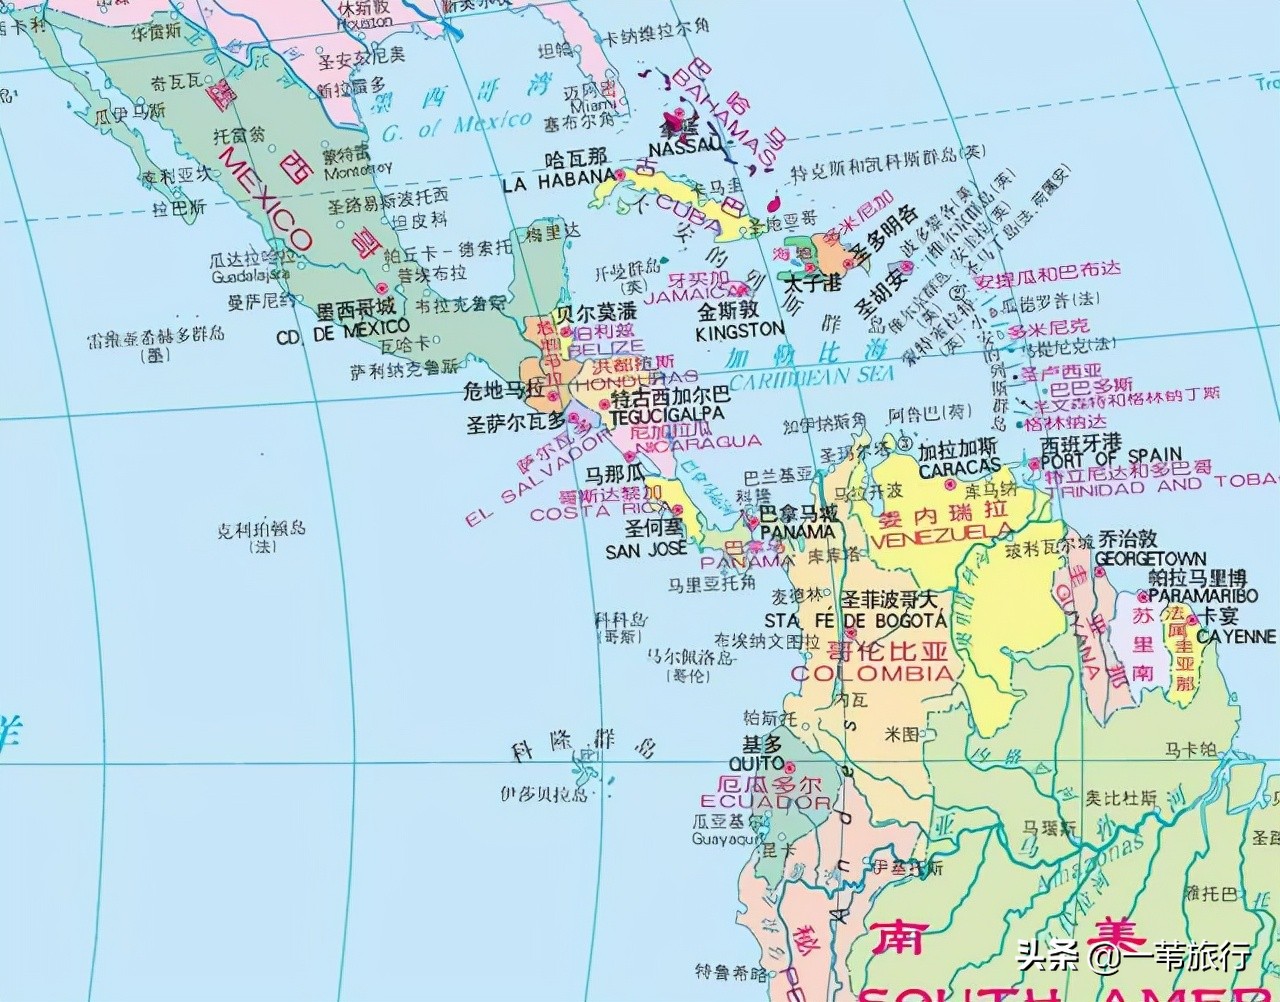 这50多万平方公里地处南,北美洲之间狭长的连接地带,西南濒太平洋